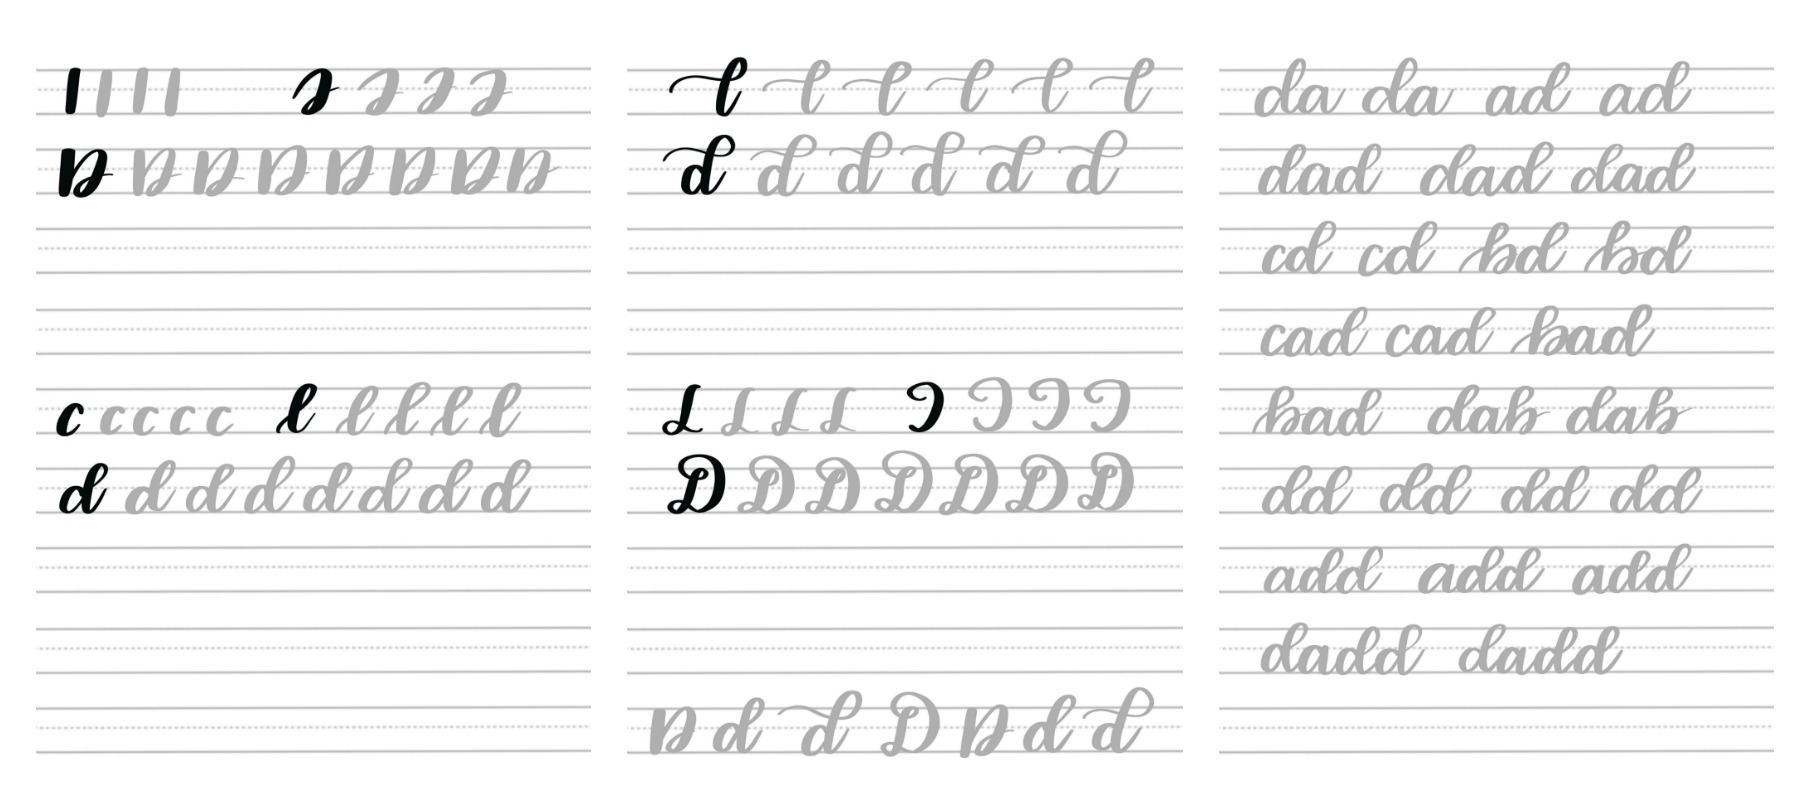 Brush Script D Practice Sheets